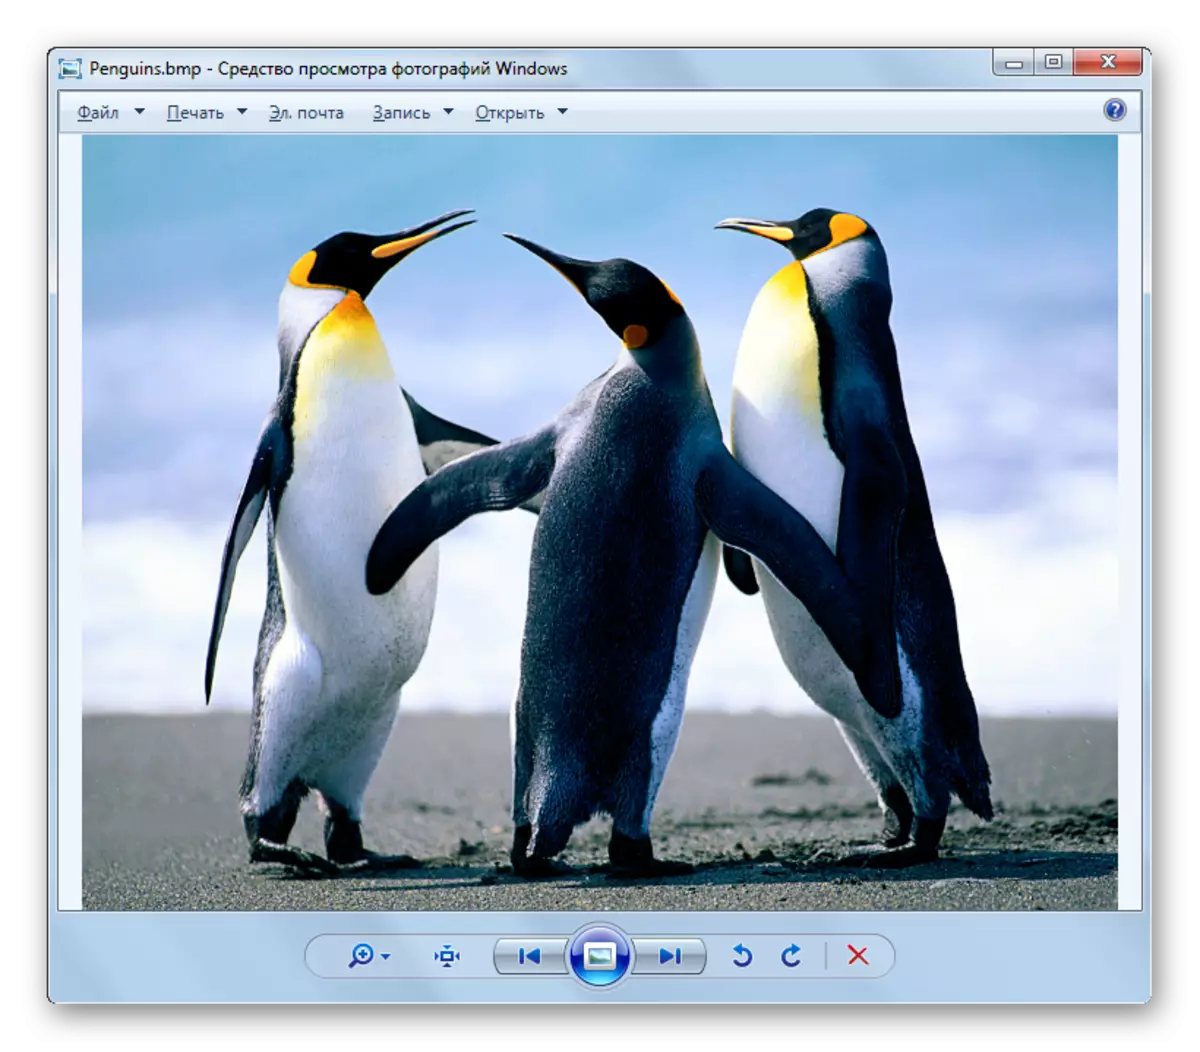 Зображення BMP відкрито в оболонці кошти для перегляду фотографій Віндовс в Windows 7